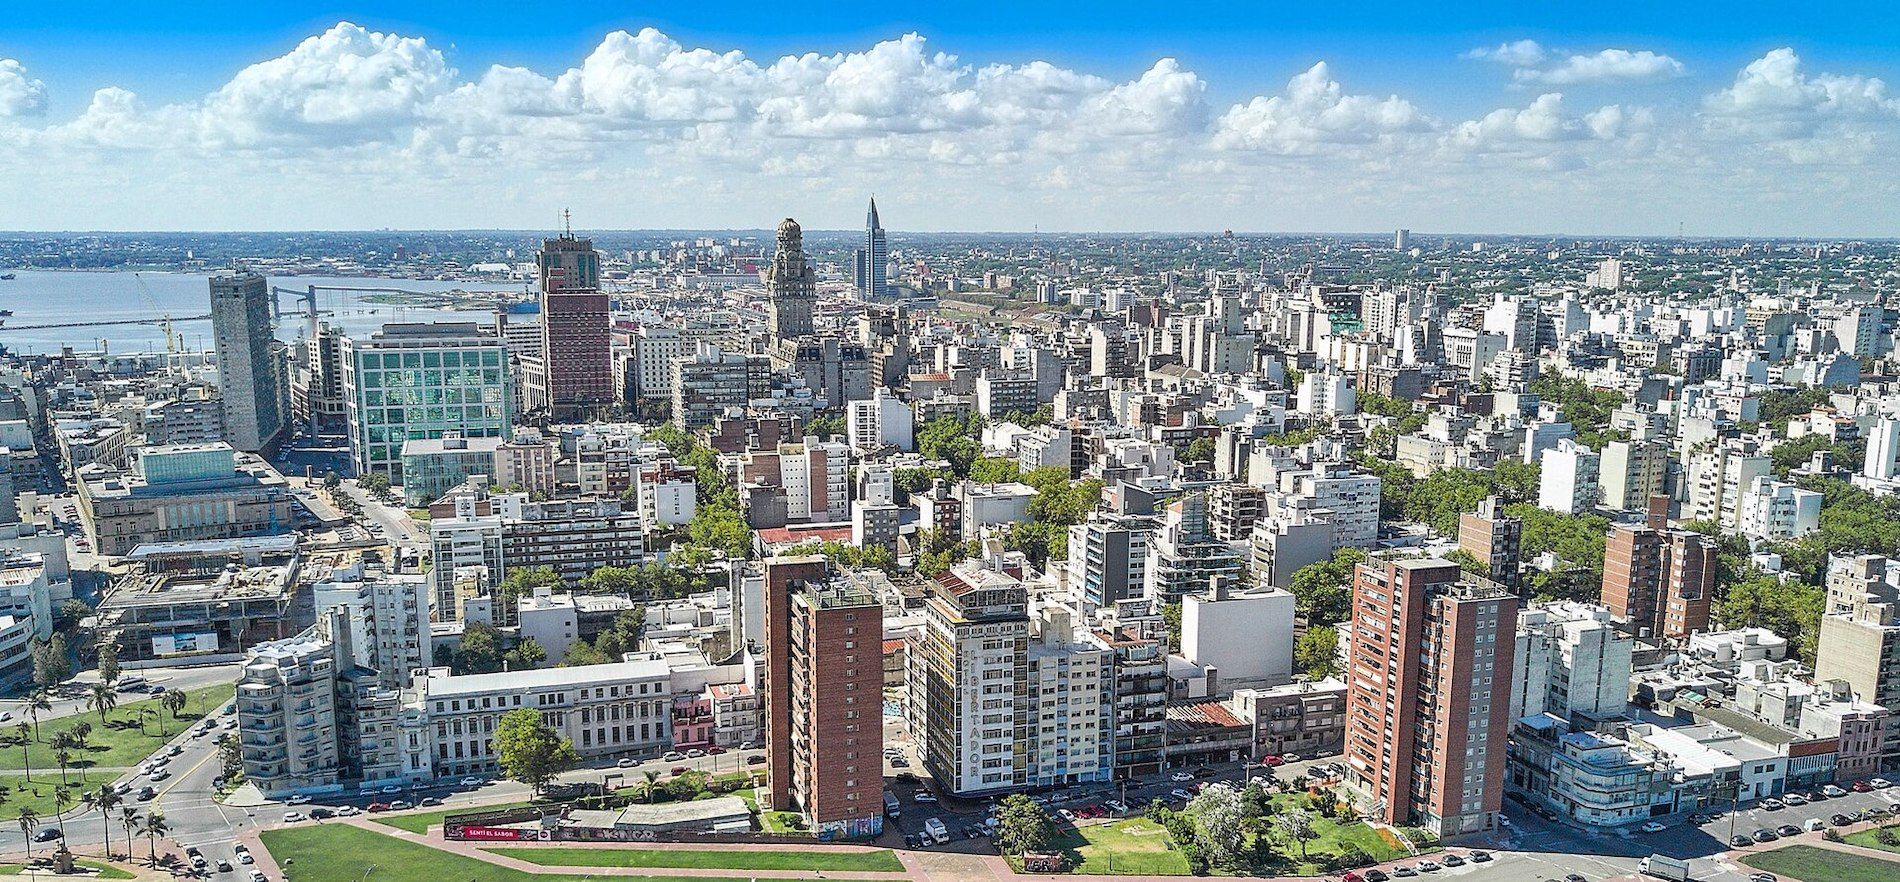 La oficina está ubicada en la capital uruguaya, Montevideo.